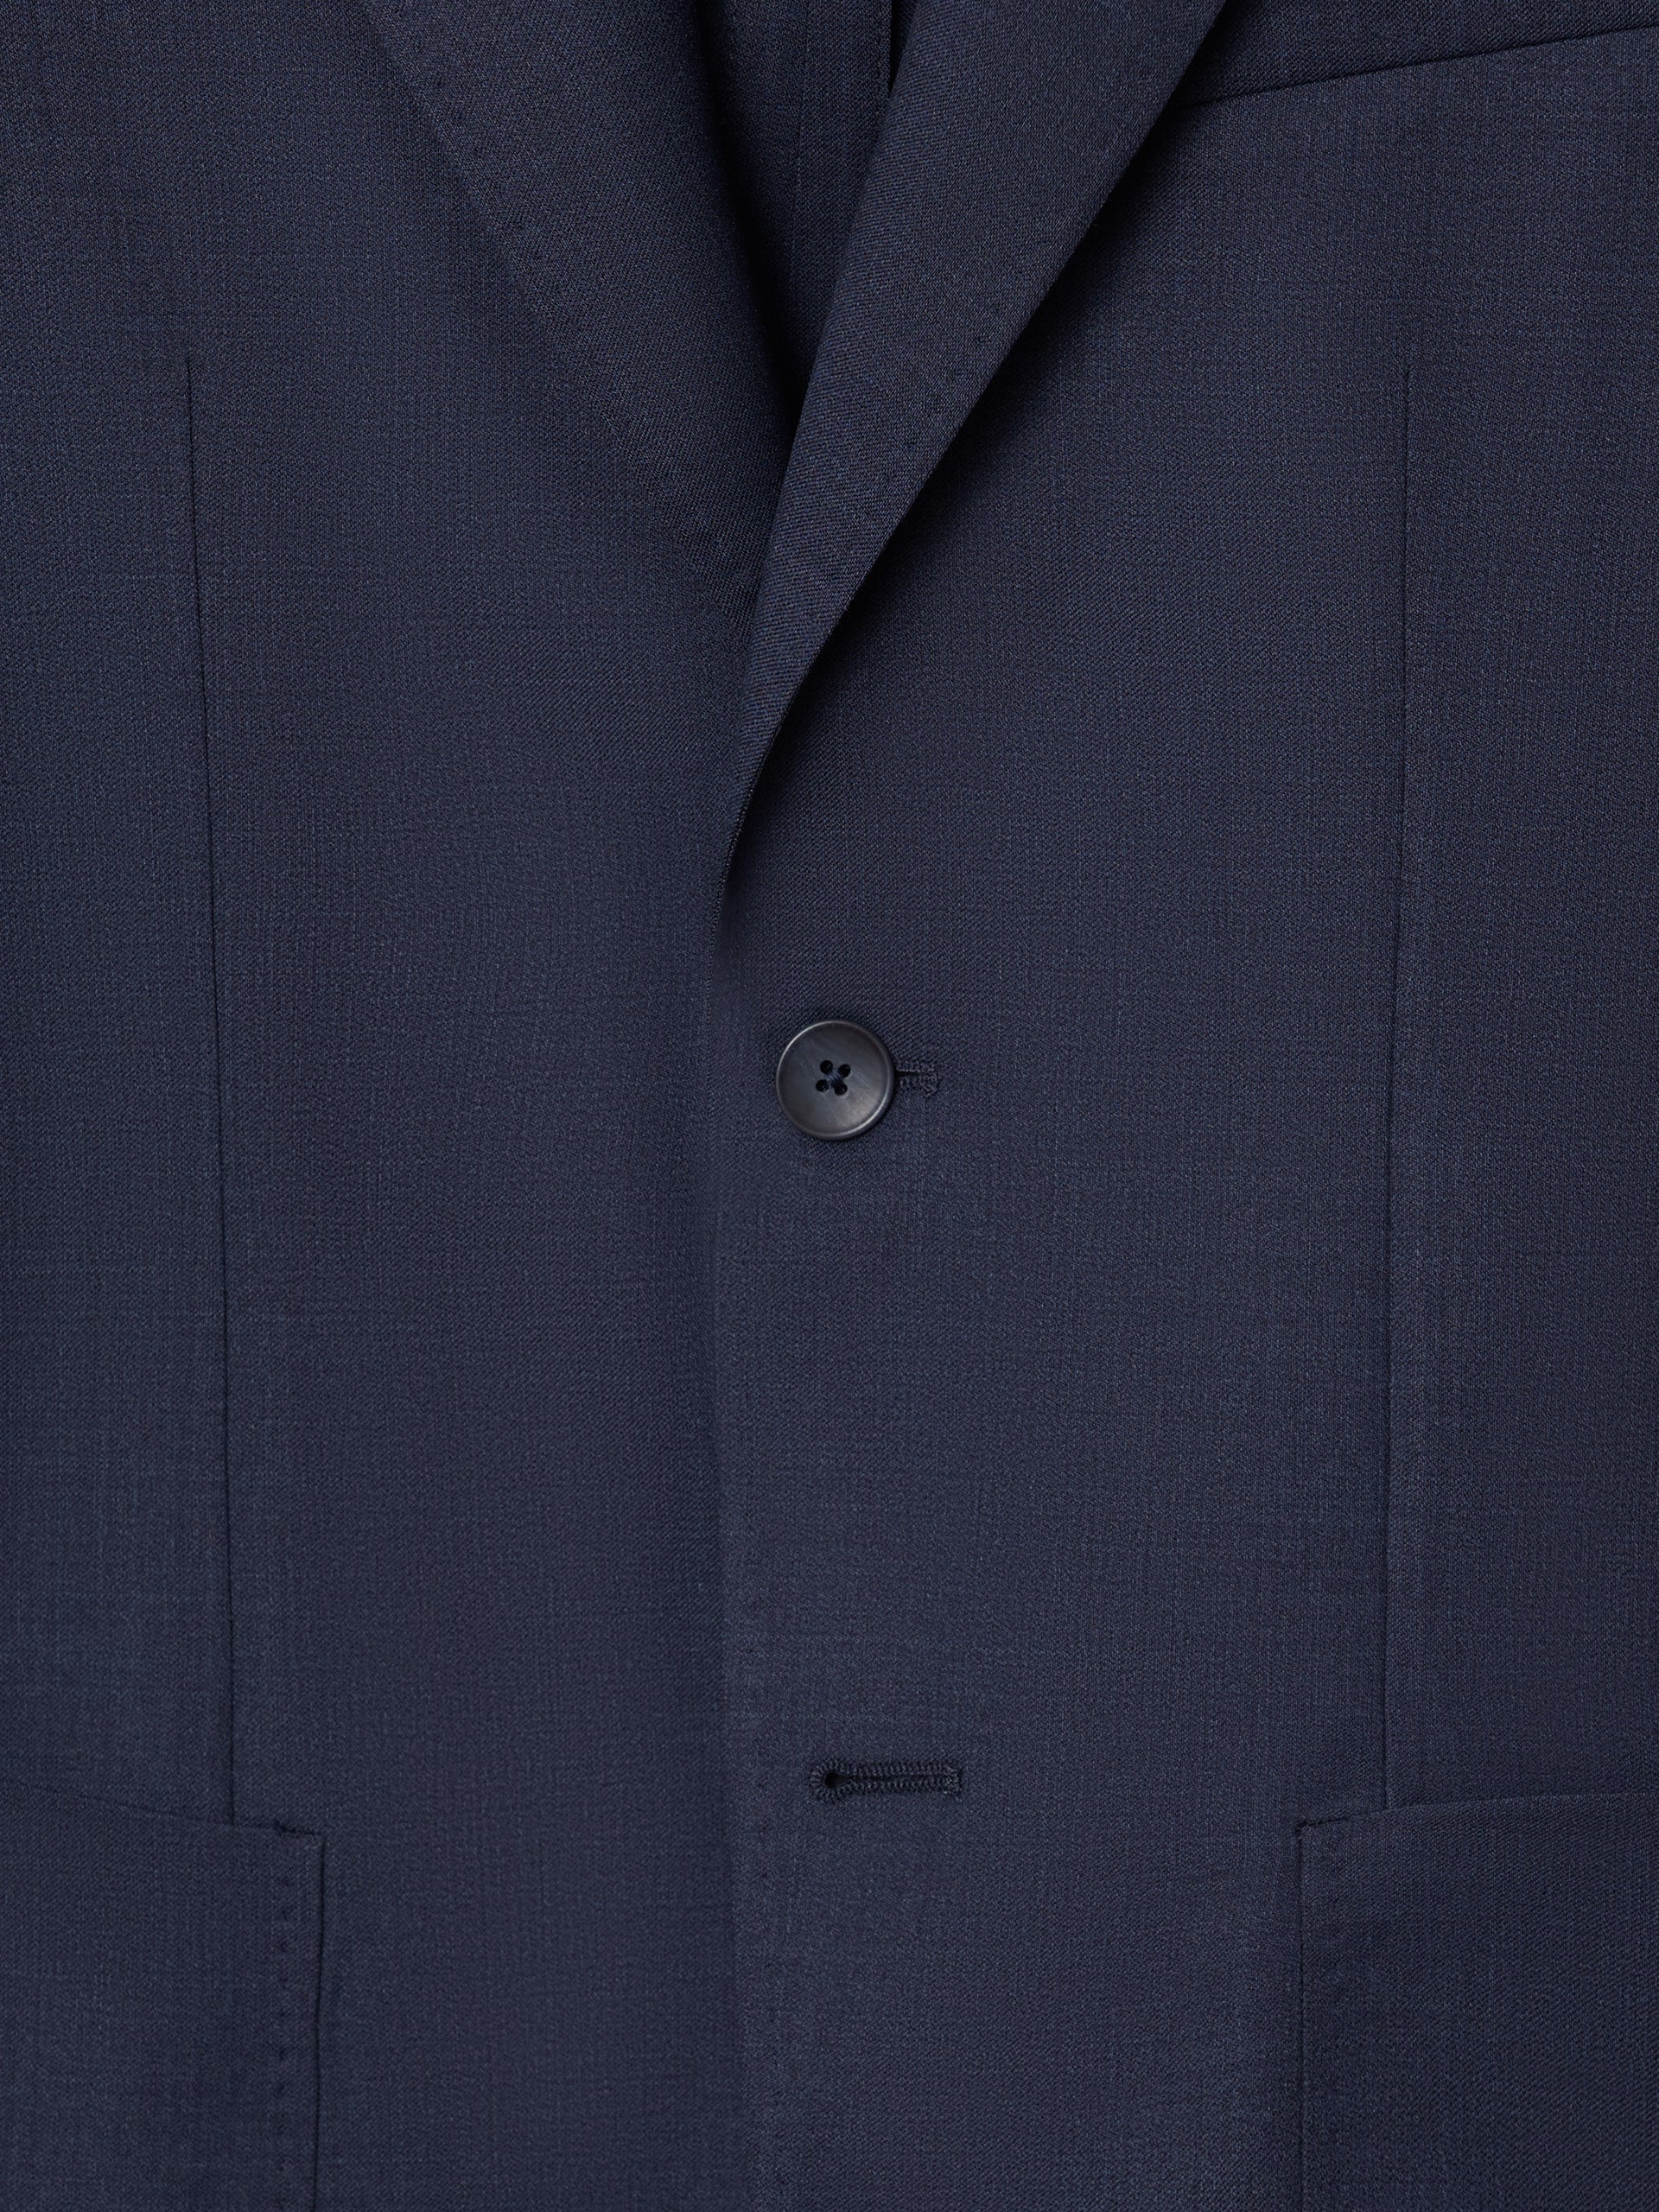 Blue fil a fil suit jacket